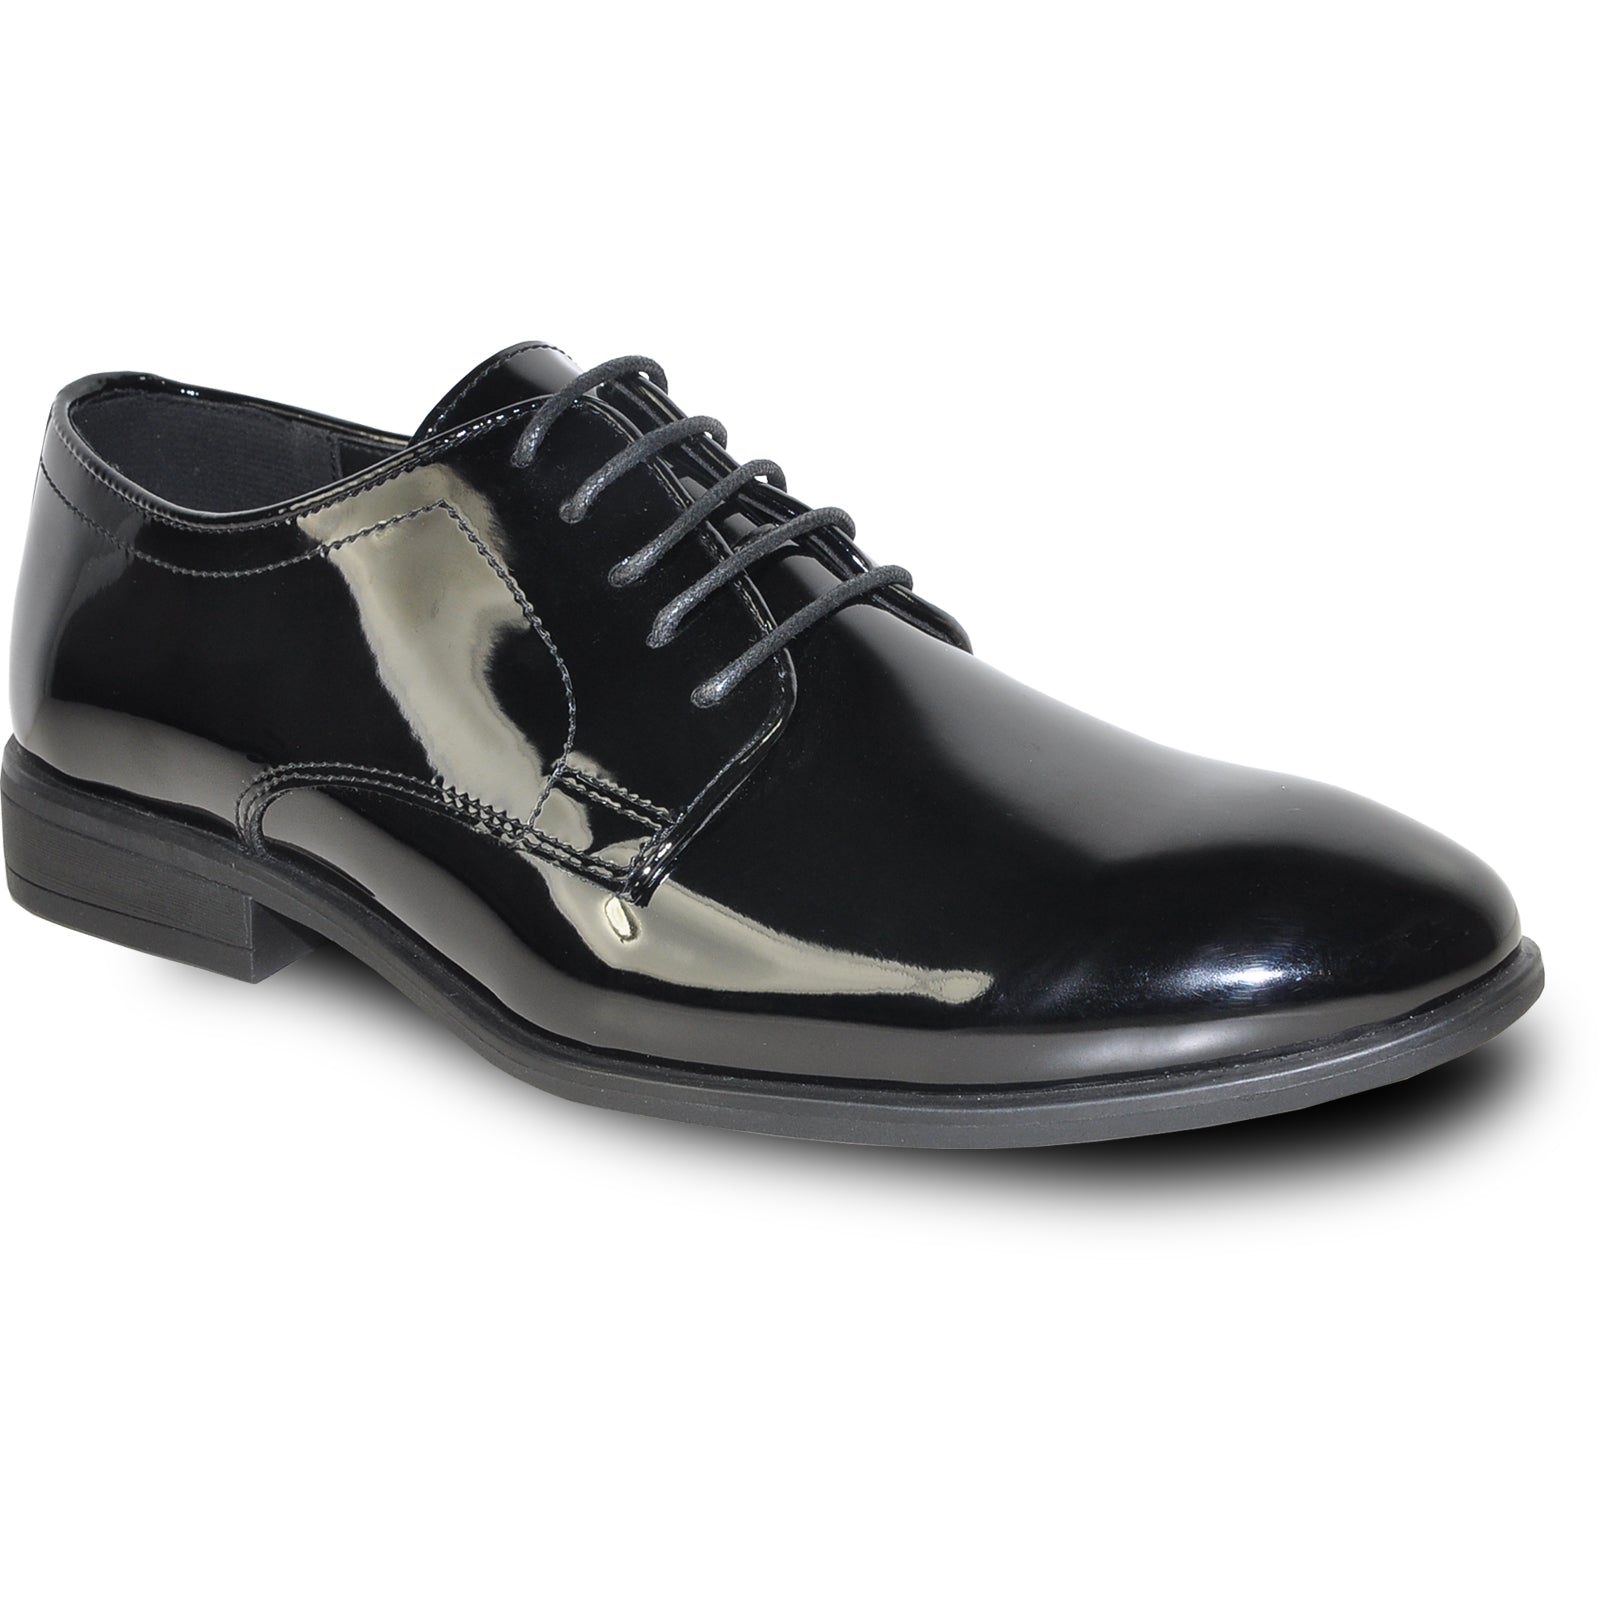 "Black Patent Oxford Dress Shoe - Men's Classic Plain Toe Tuxedo"